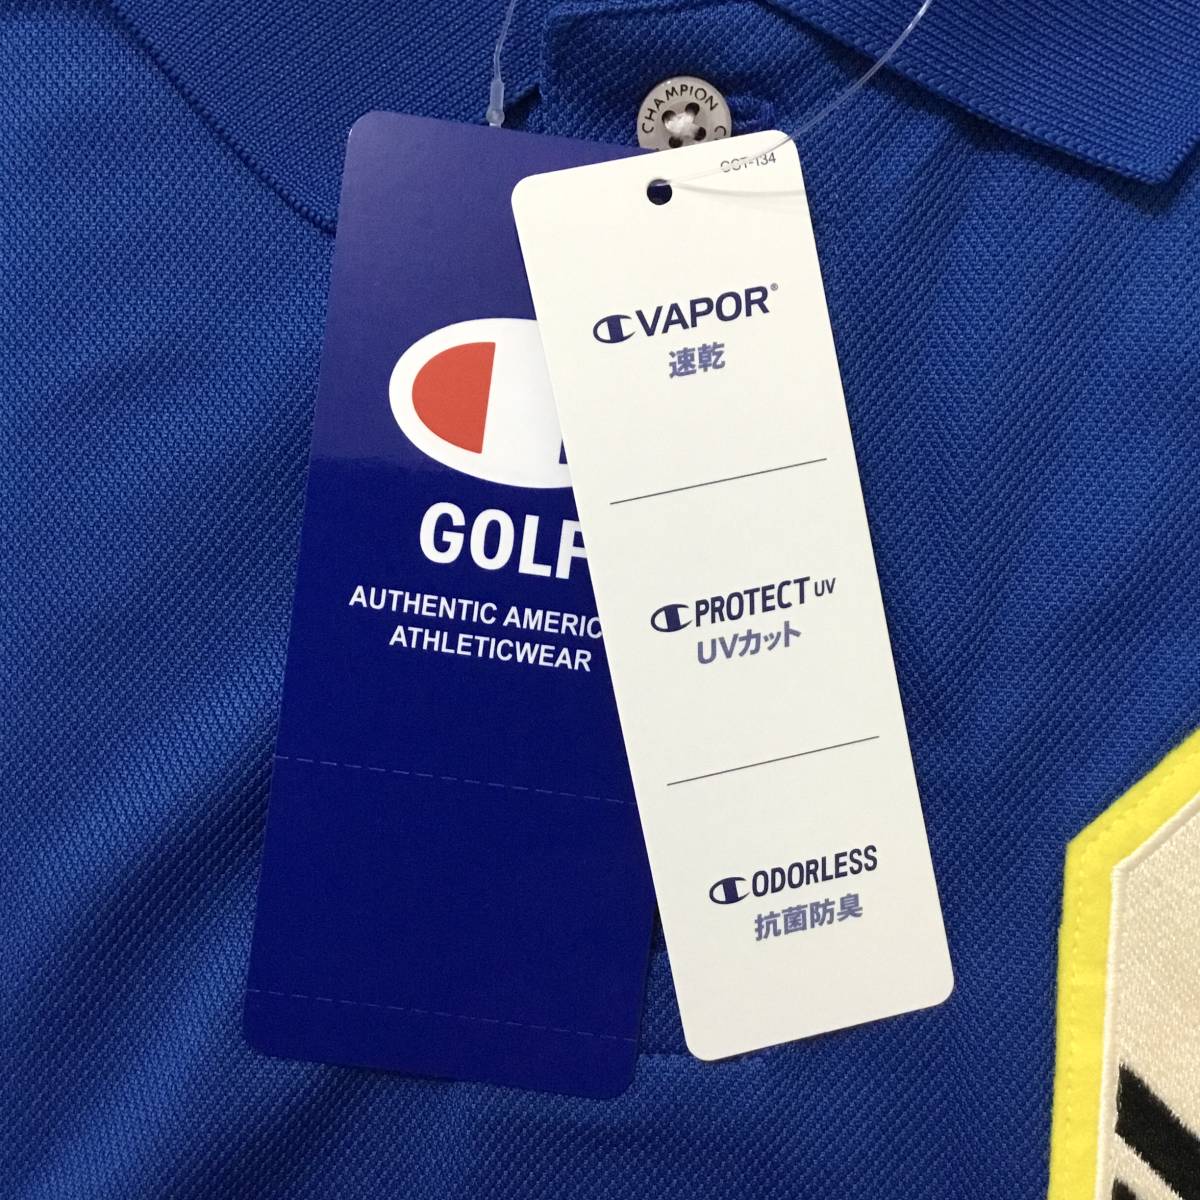 新品 チャンピオン ゴルフ 半袖 ポロシャツ Mサイズ 青 ブルー C3-VG306 税込9,680円 速乾 UVカット 抗菌防臭 メンズ ゴルフシャツの画像6